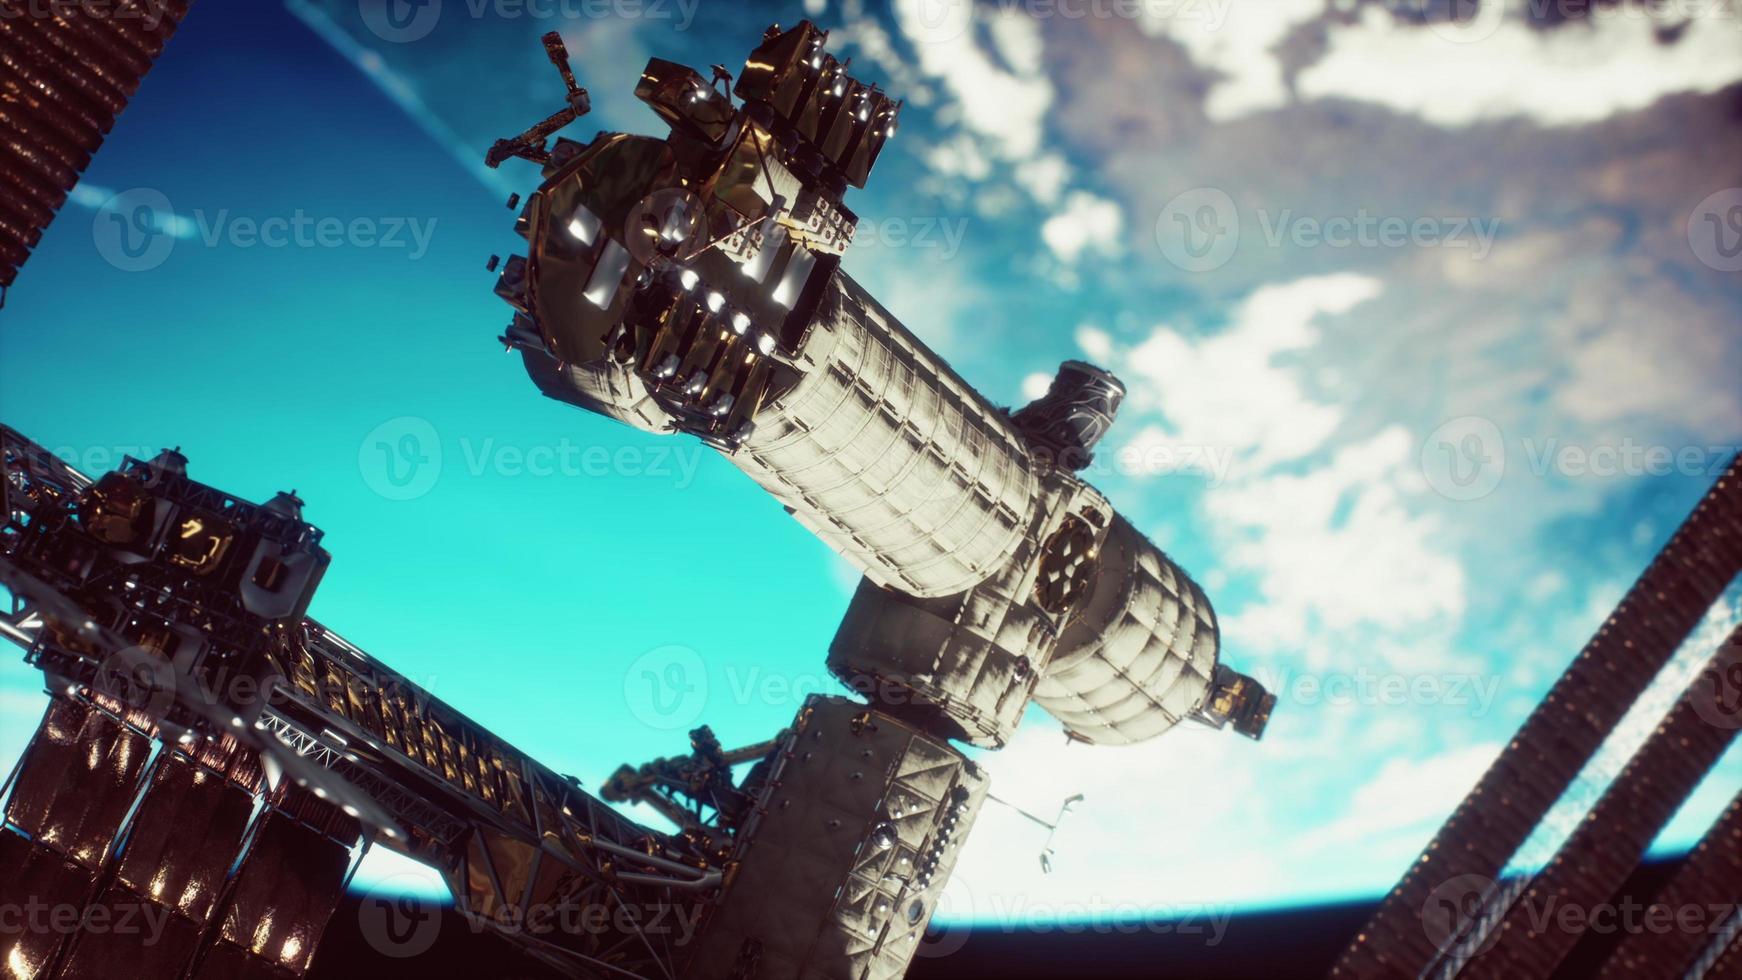 internationaal ruimtestation over de planeet elementen geleverd door nasa foto